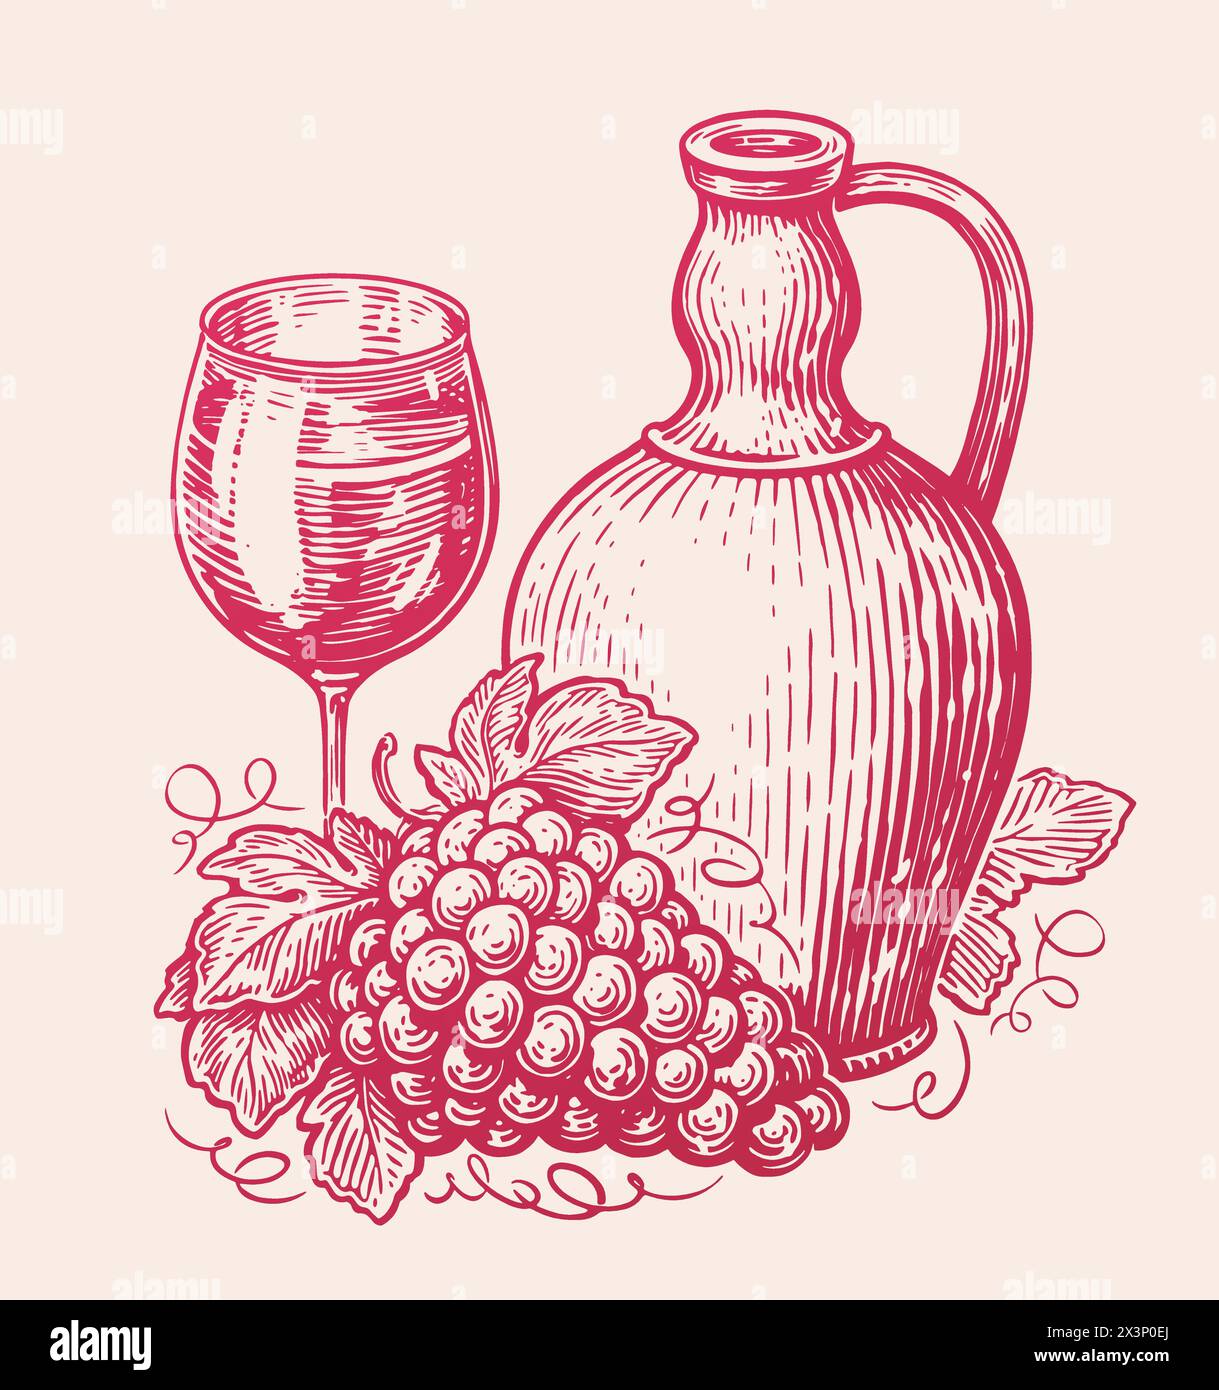 Kanne Wein trinken mit Glas und Trauben. Stillleben Skizze. Vektorillustration im künstlerischen Zeichenstil Stock Vektor